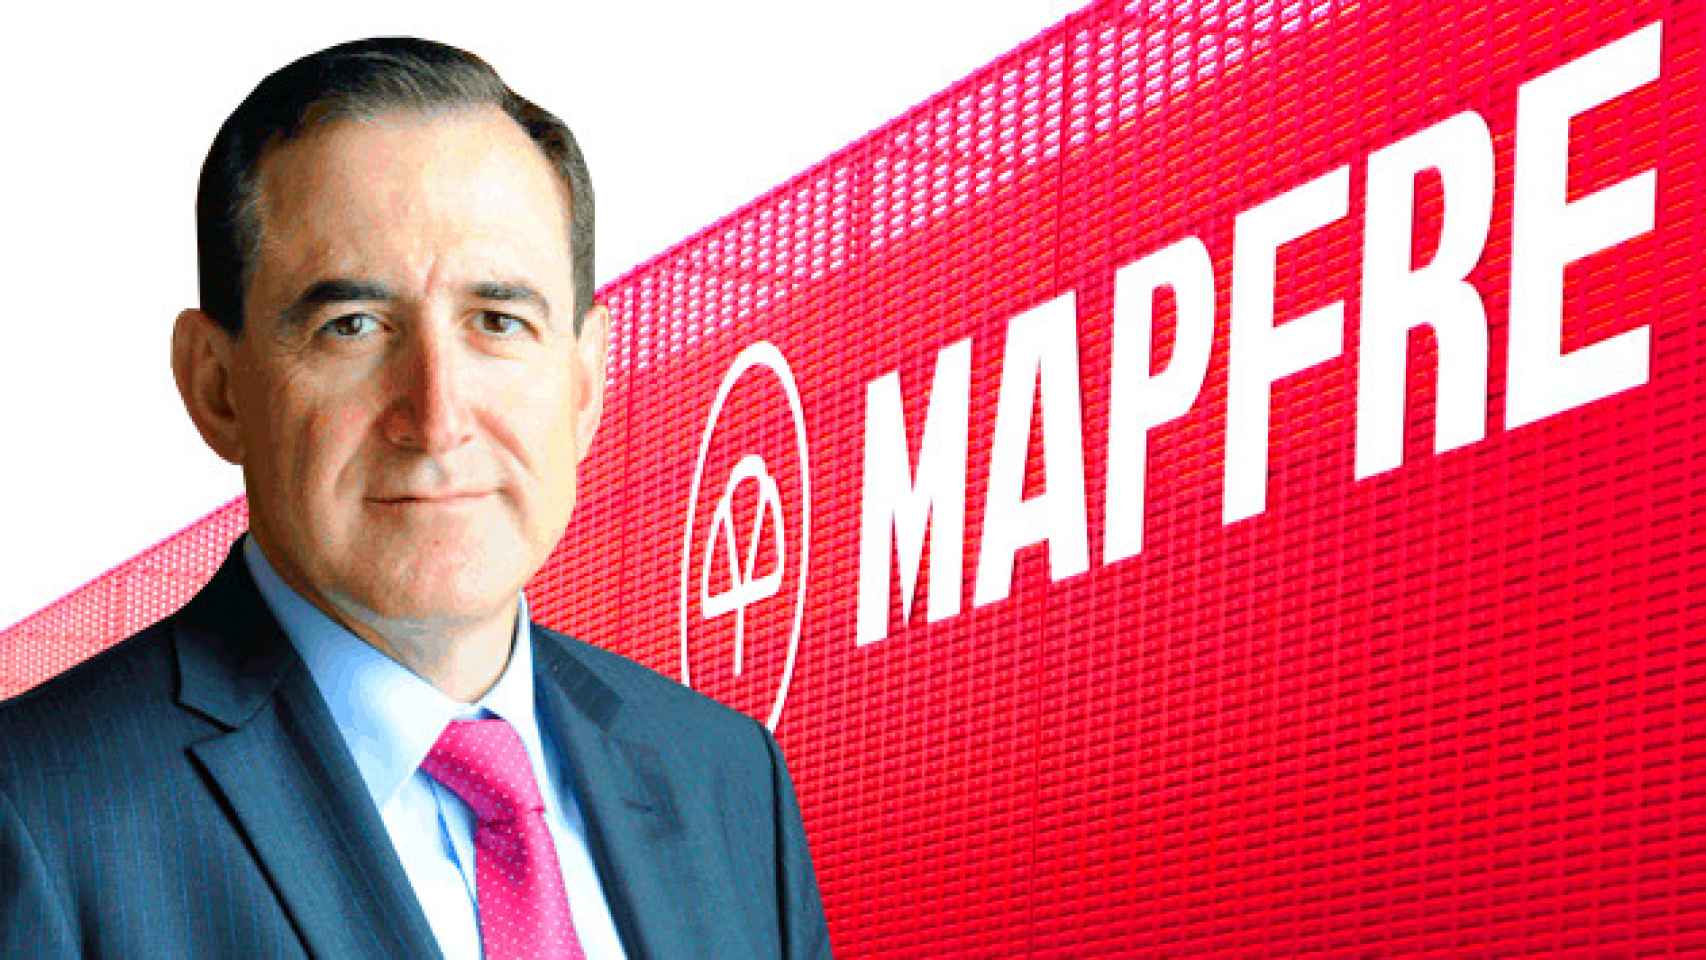 El presidente de Mapfre, Antonio Huertas / CG